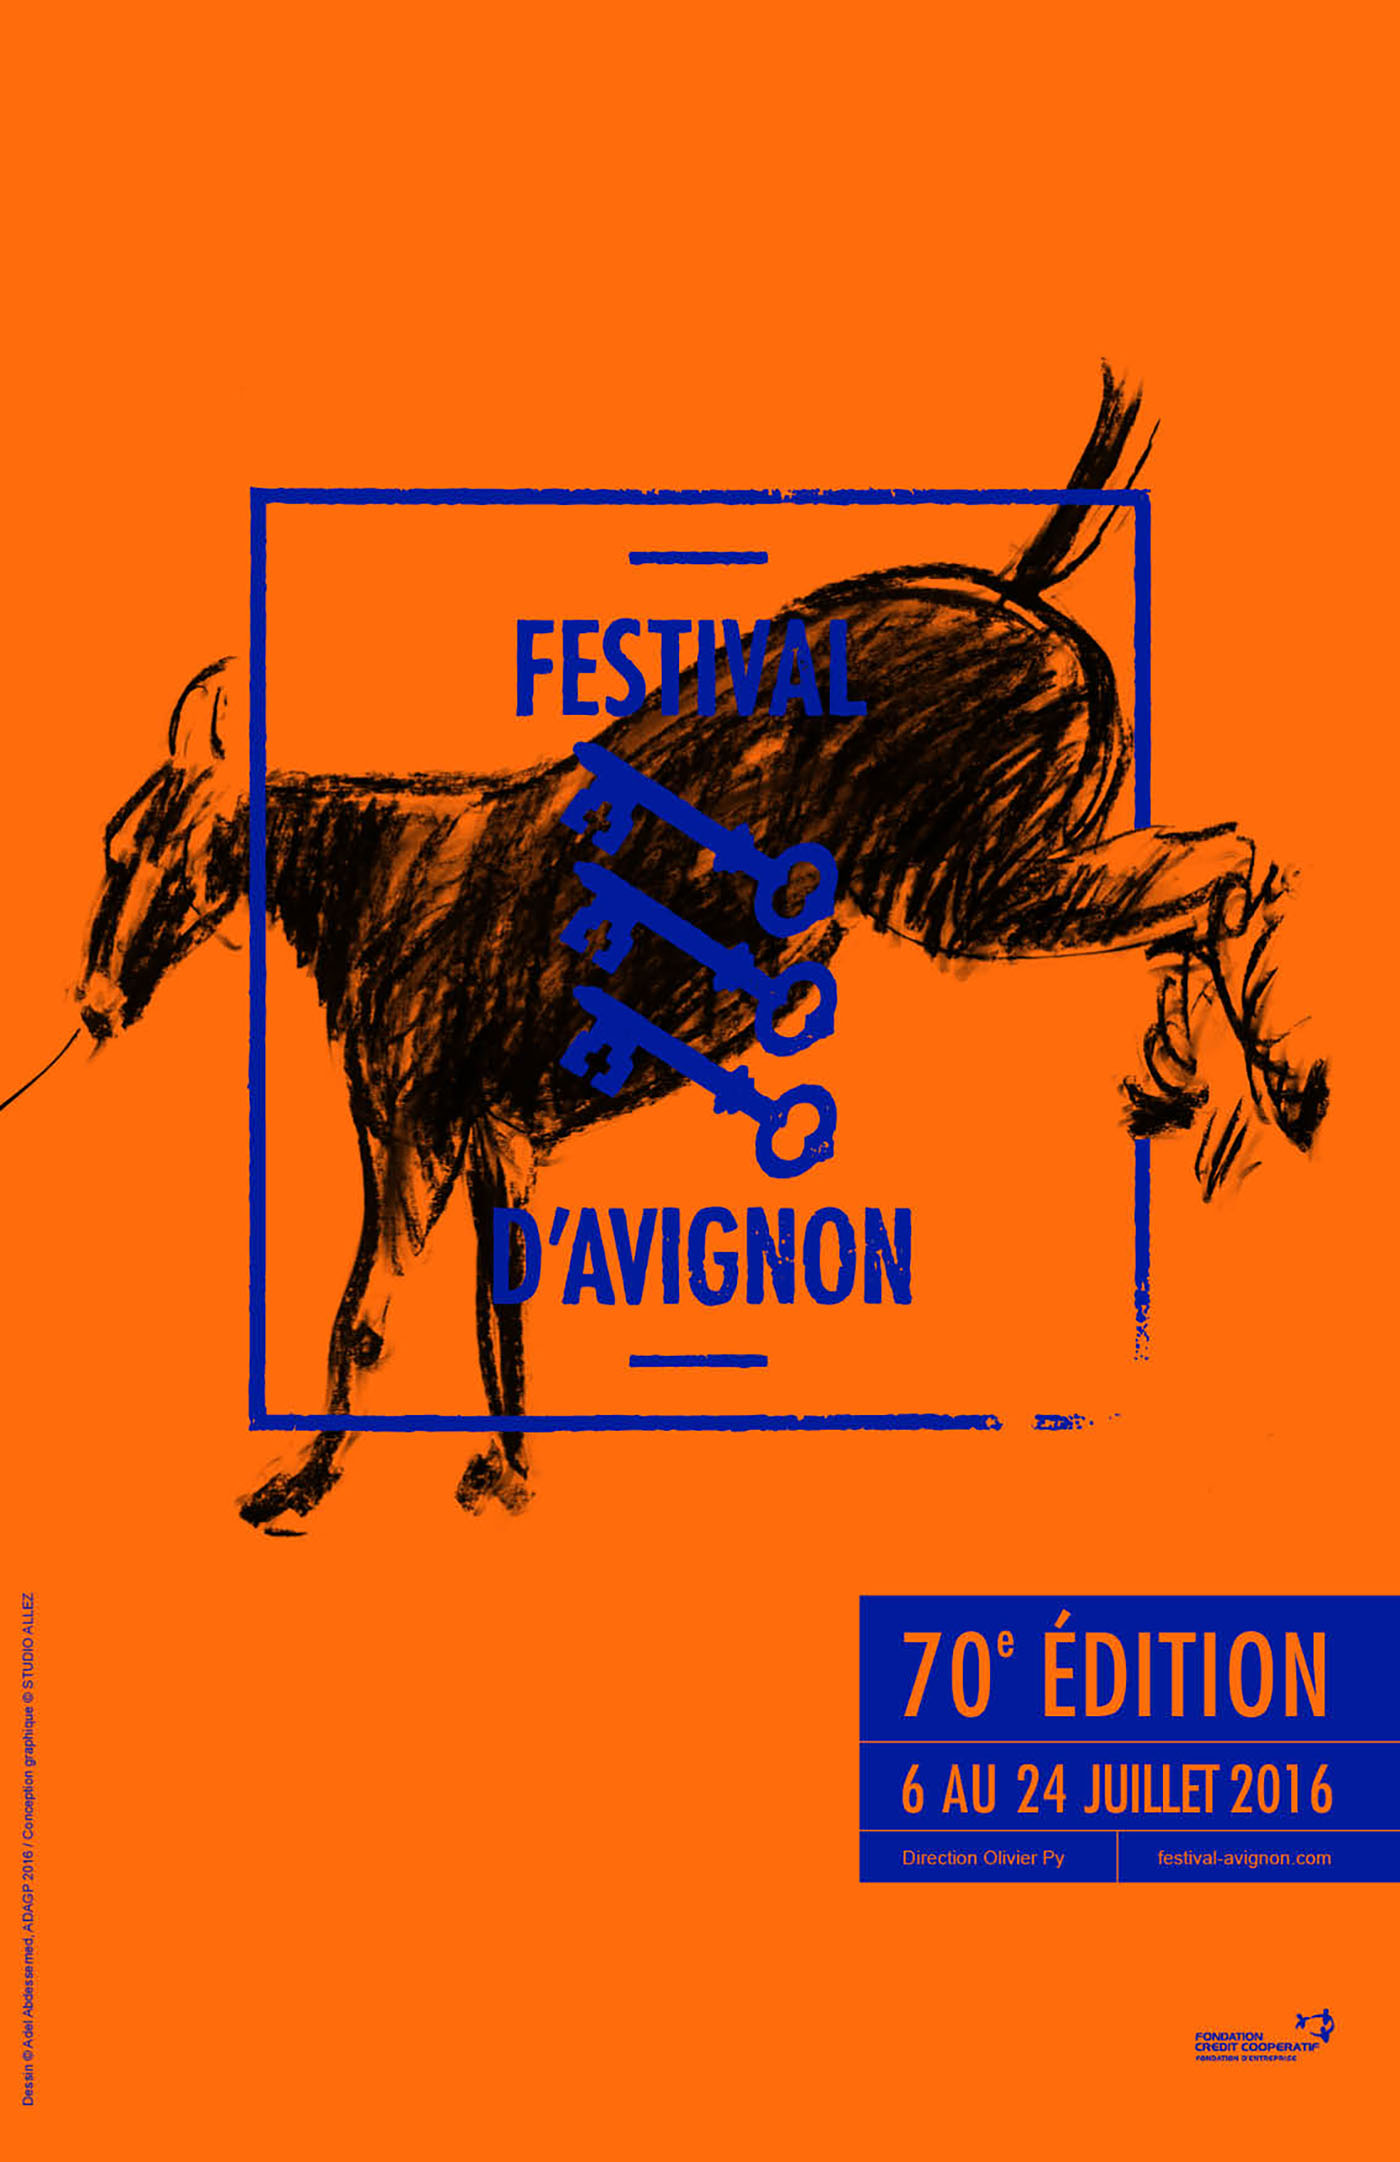 festival avignon invitation